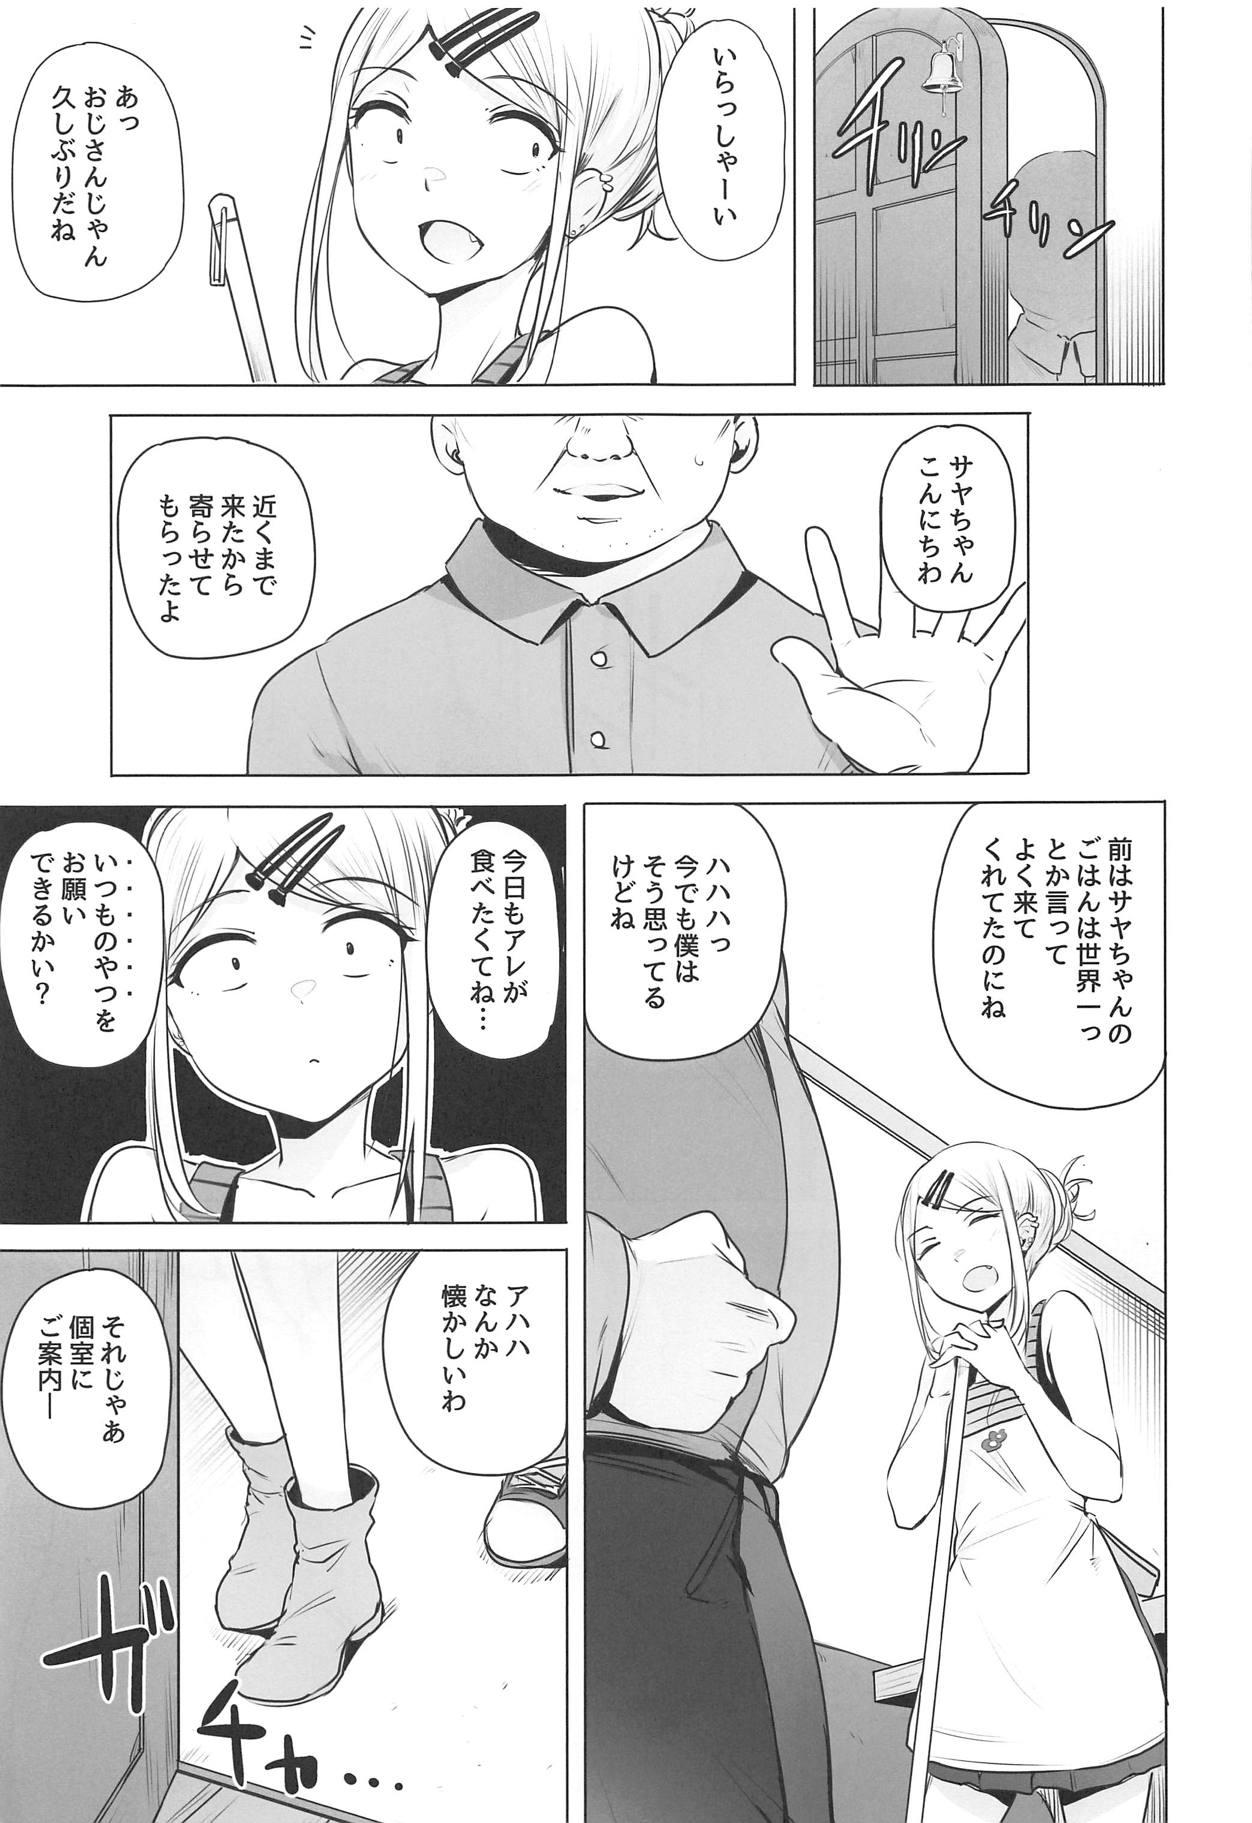 Reverse Cowgirl Saya-chan no ga Ichiban Oishii - Dagashi kashi Cdmx - Page 3